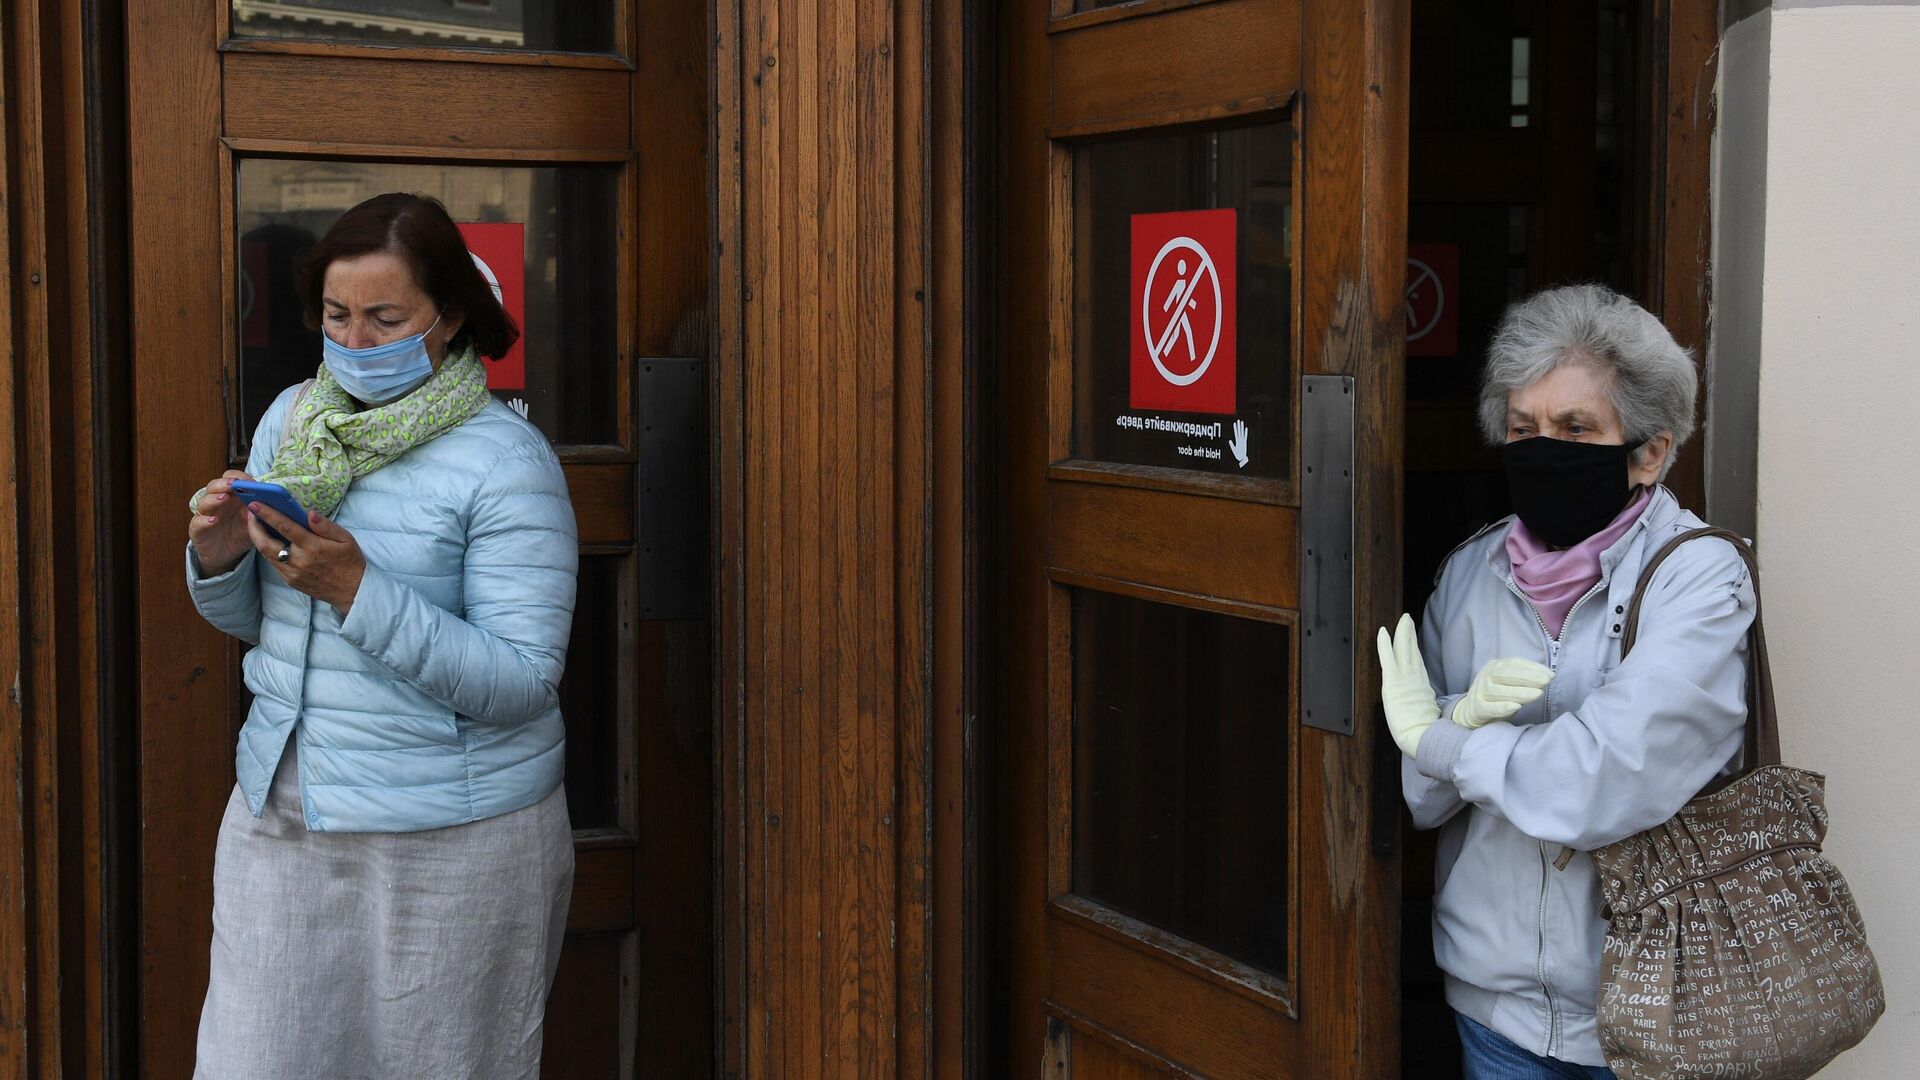 Пассажиры в медицинских масках выходят из вестибюля станции метро Парк культуры в Москве - РИА Новости, 1920, 06.10.2020